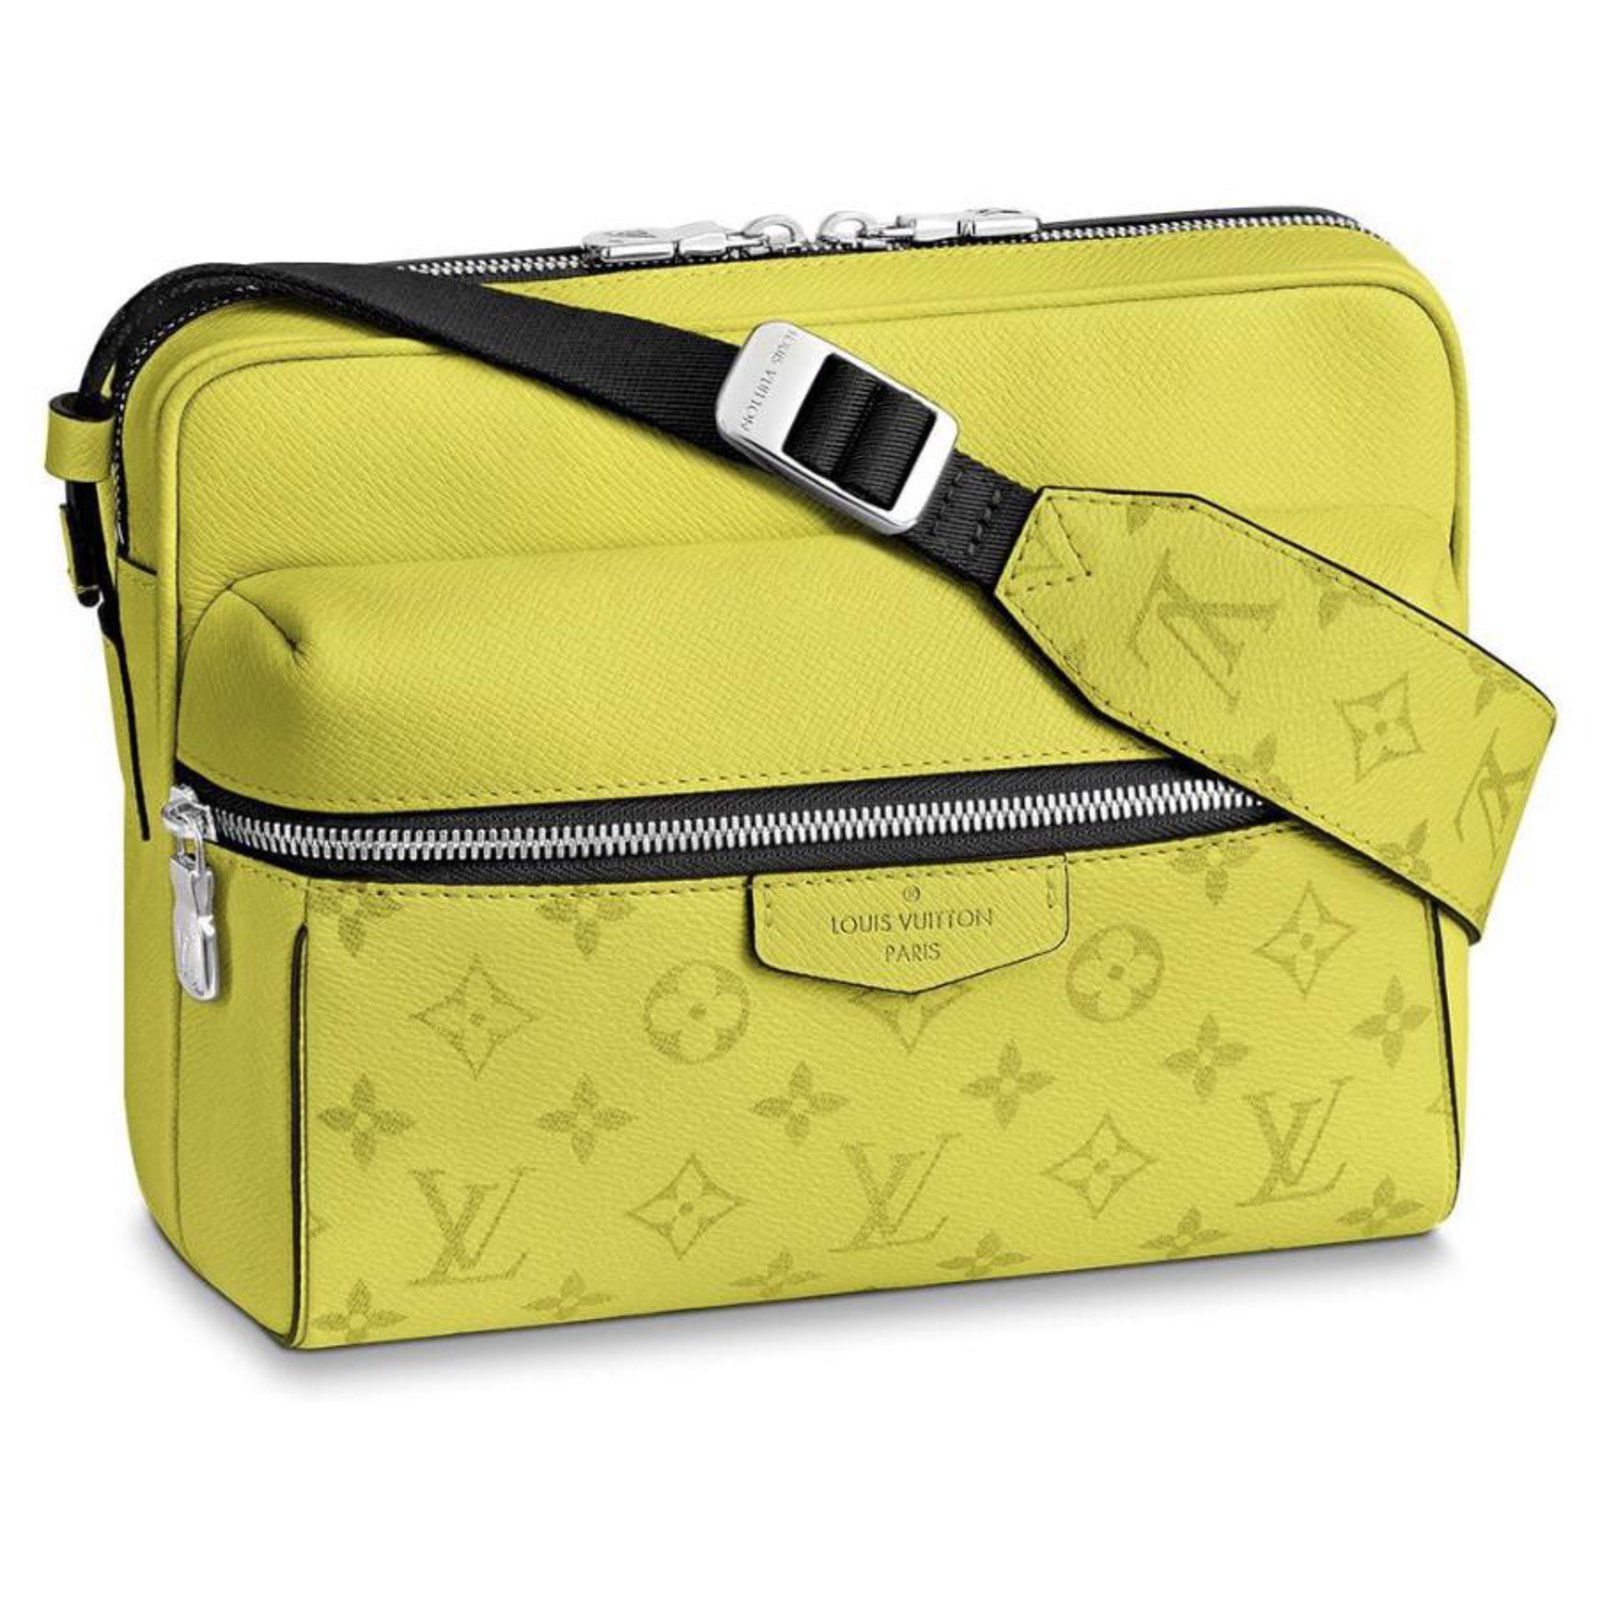 Louis Vuitton Taschen aus Leder - Gelb - 33992250